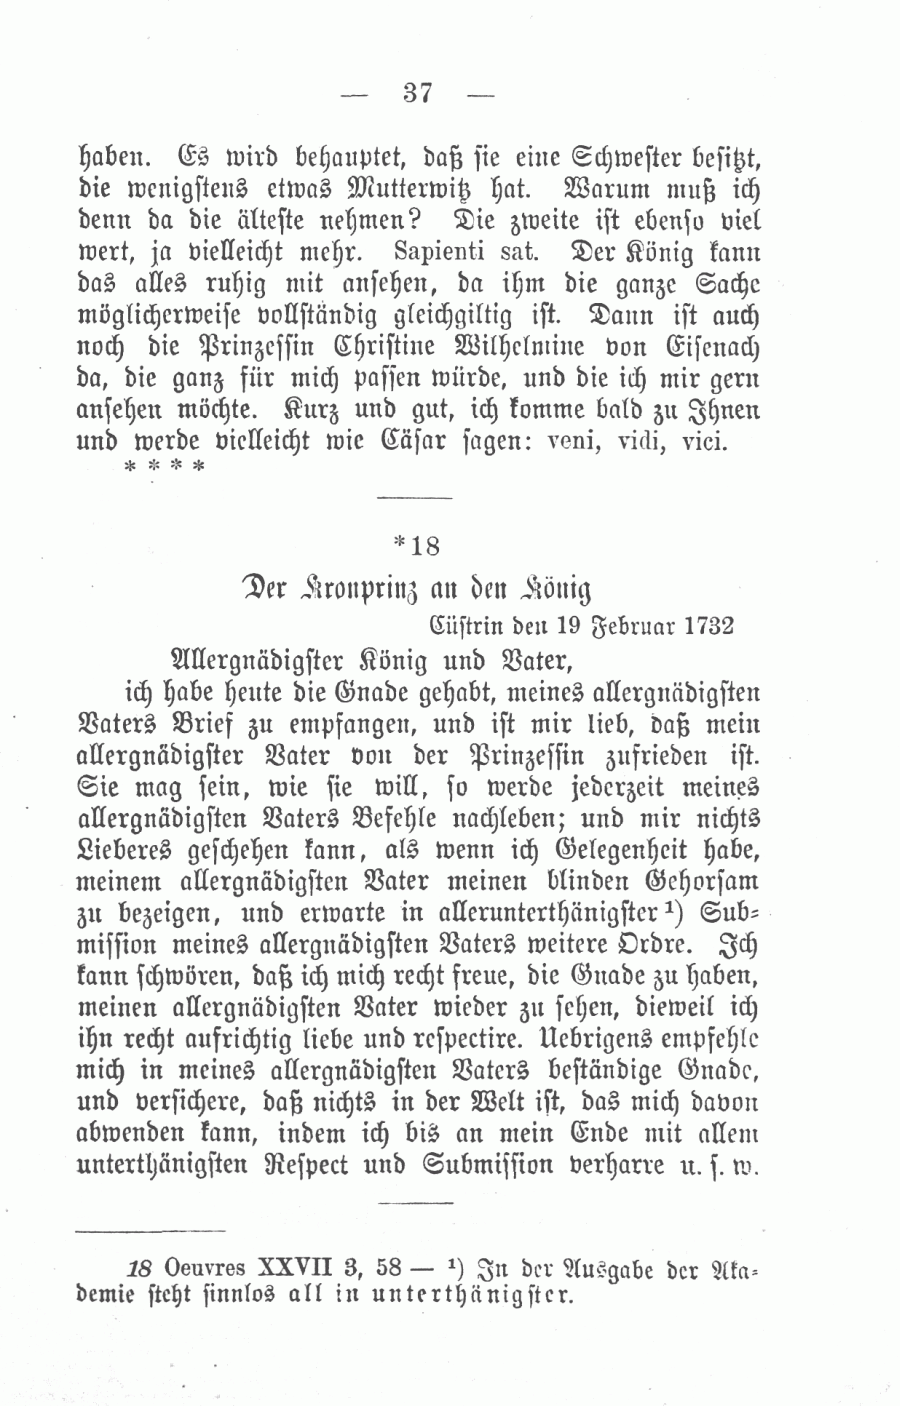 S. 37, Obj. 2